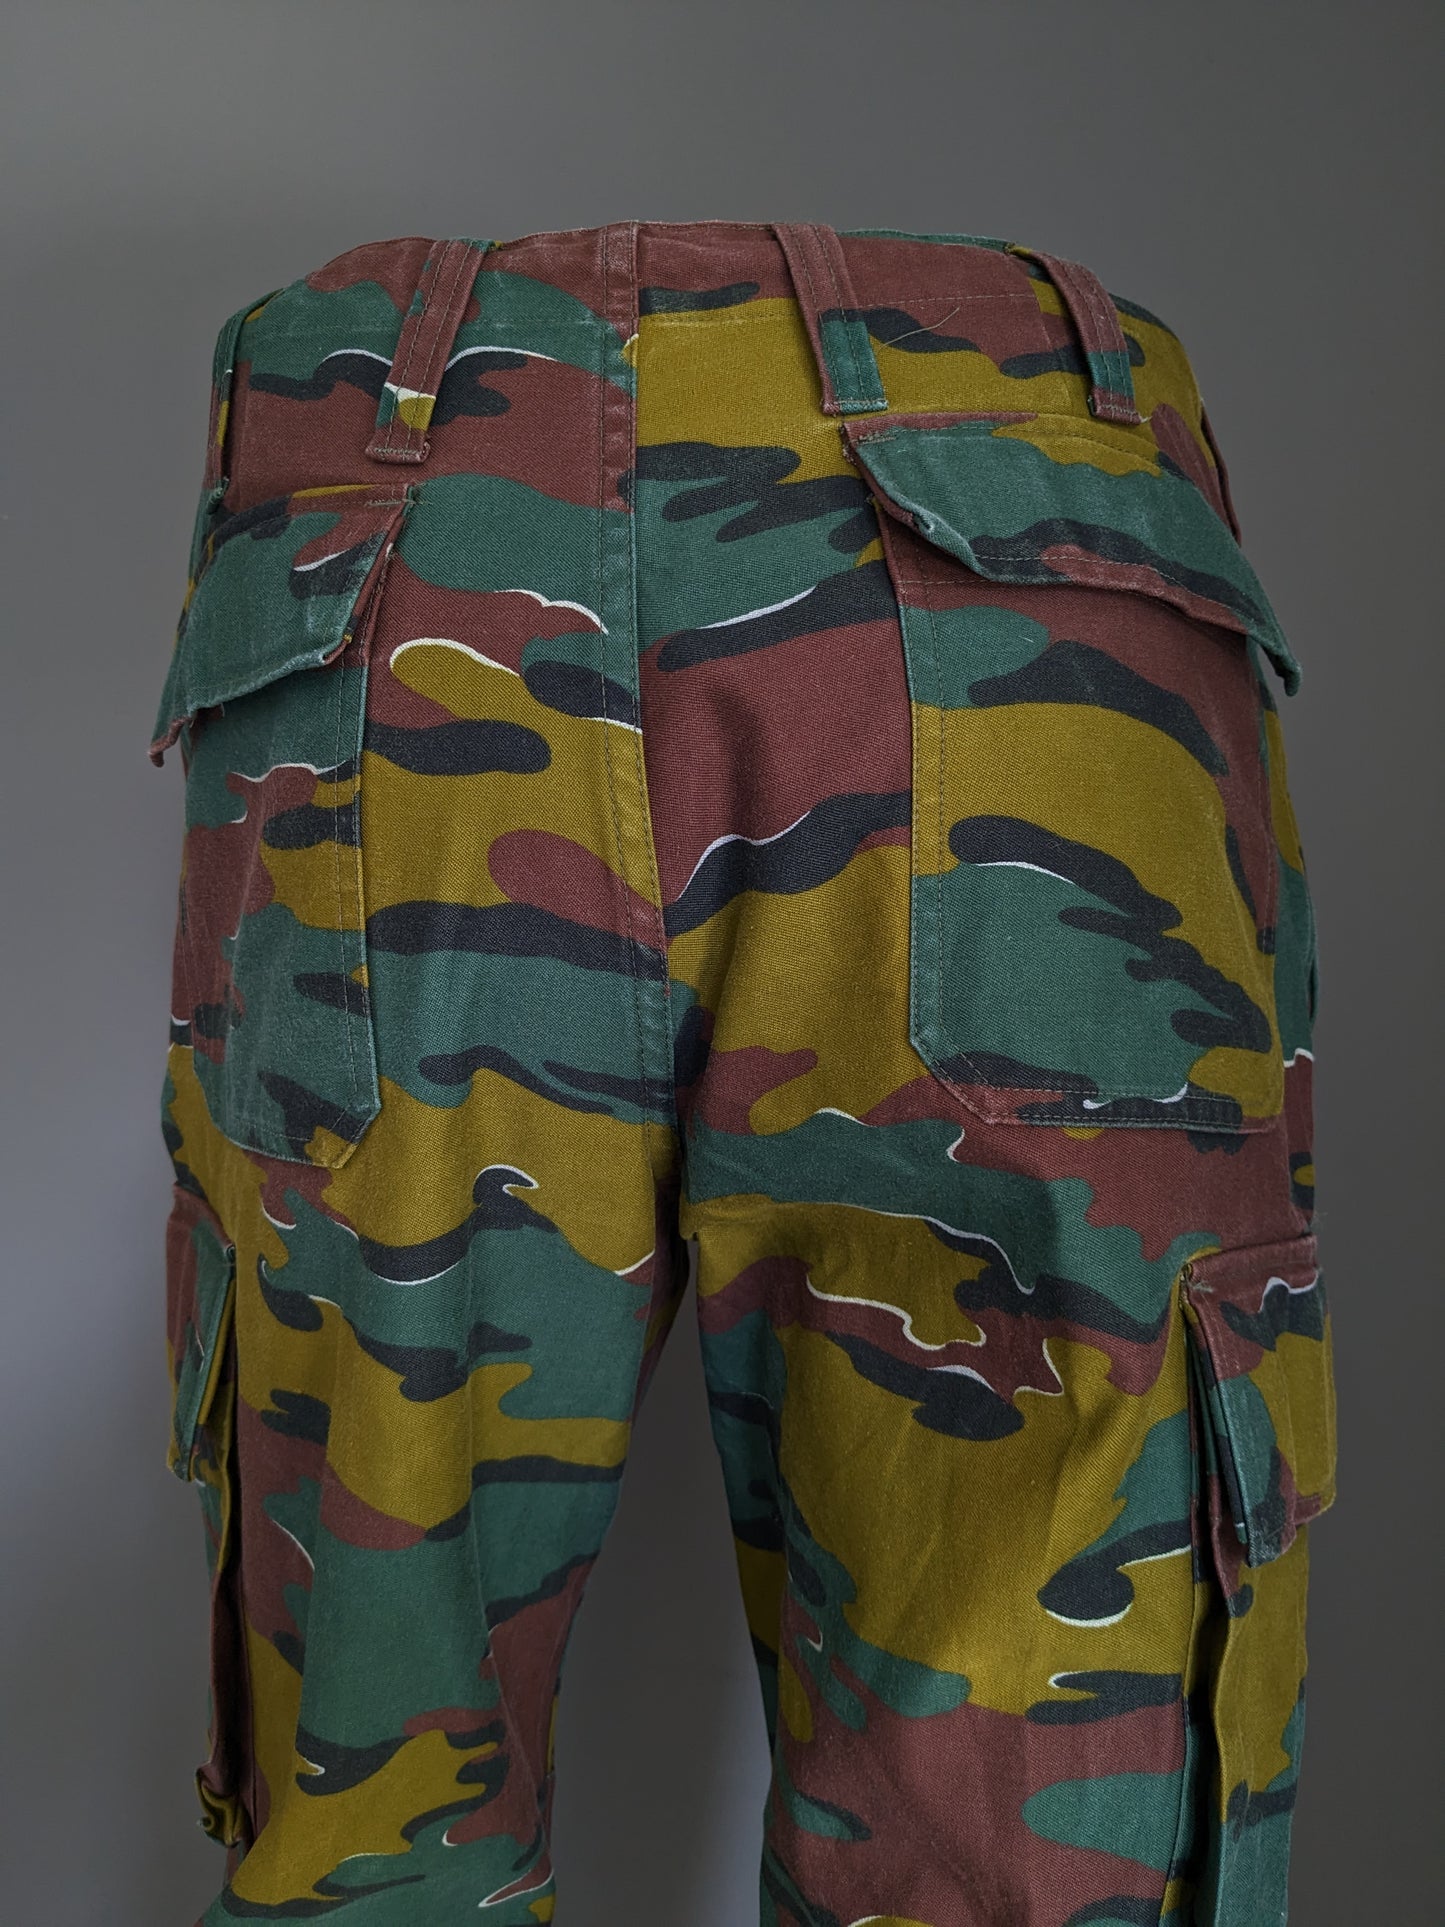 Pantalones del ejército / ejército. Impresión de camuflaje verde marrón. Tamaño M / L.